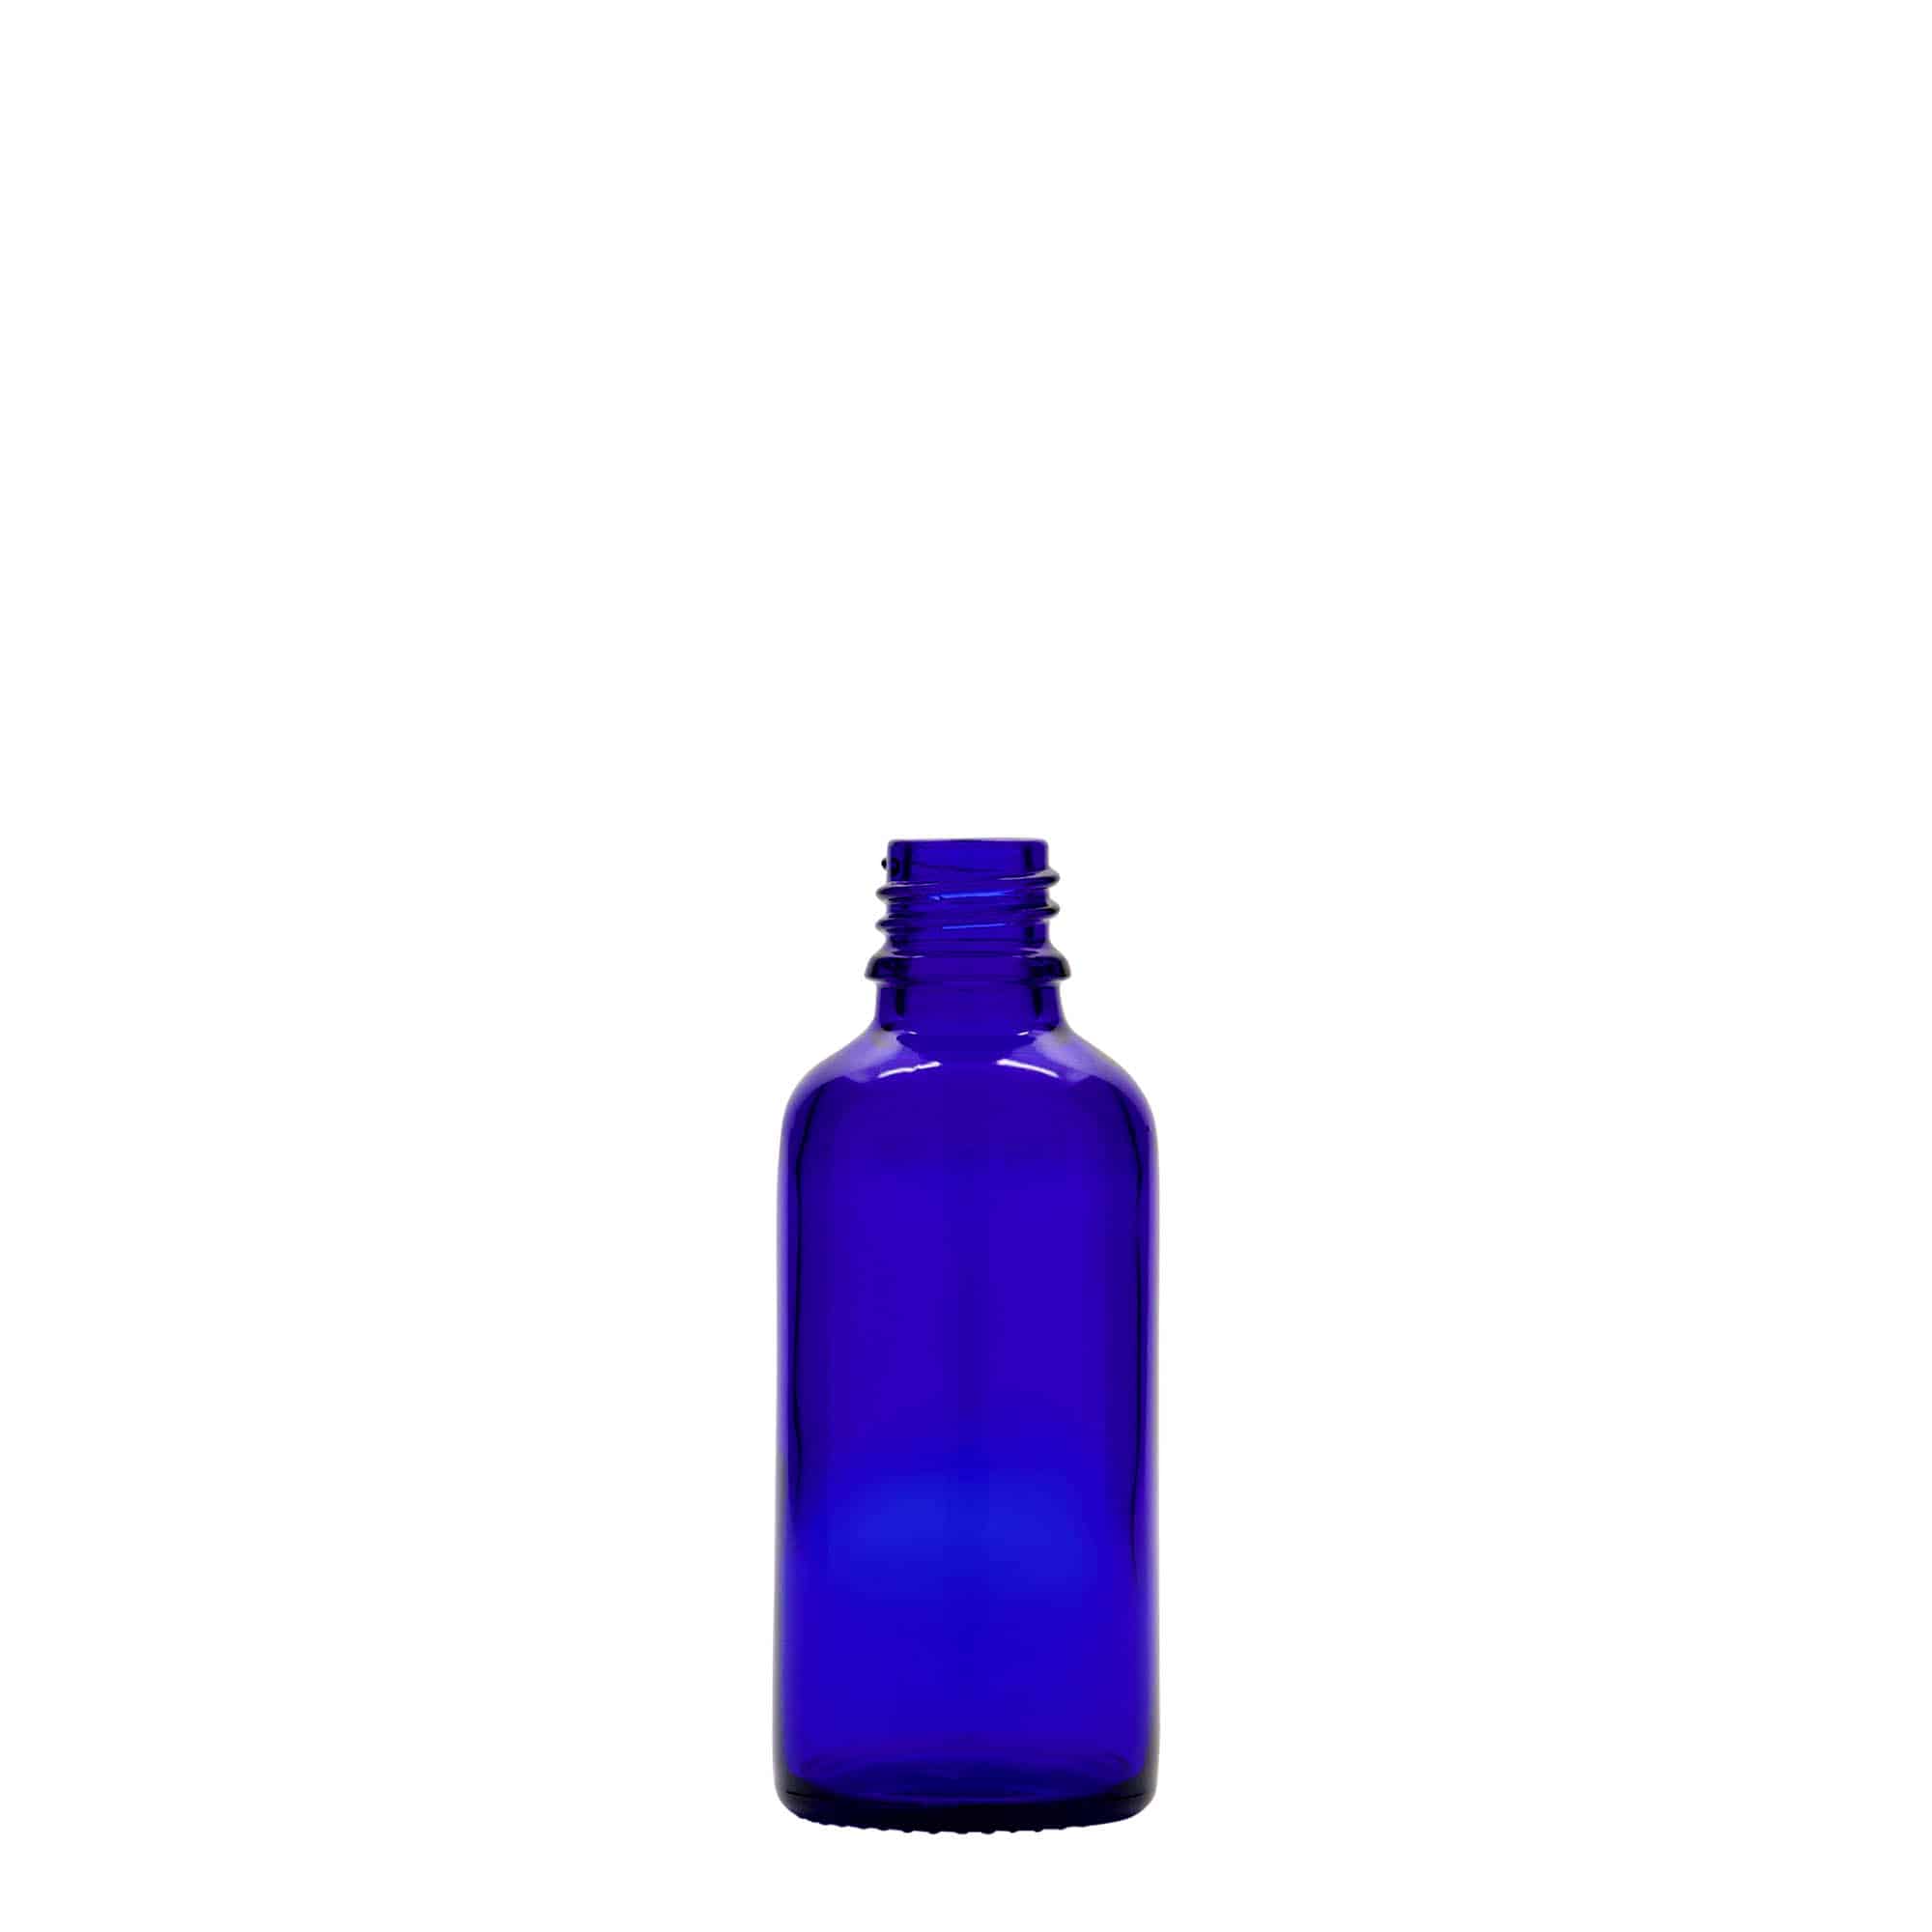 50 ml medicine bottle, glass, royal blue, closure: DIN 18